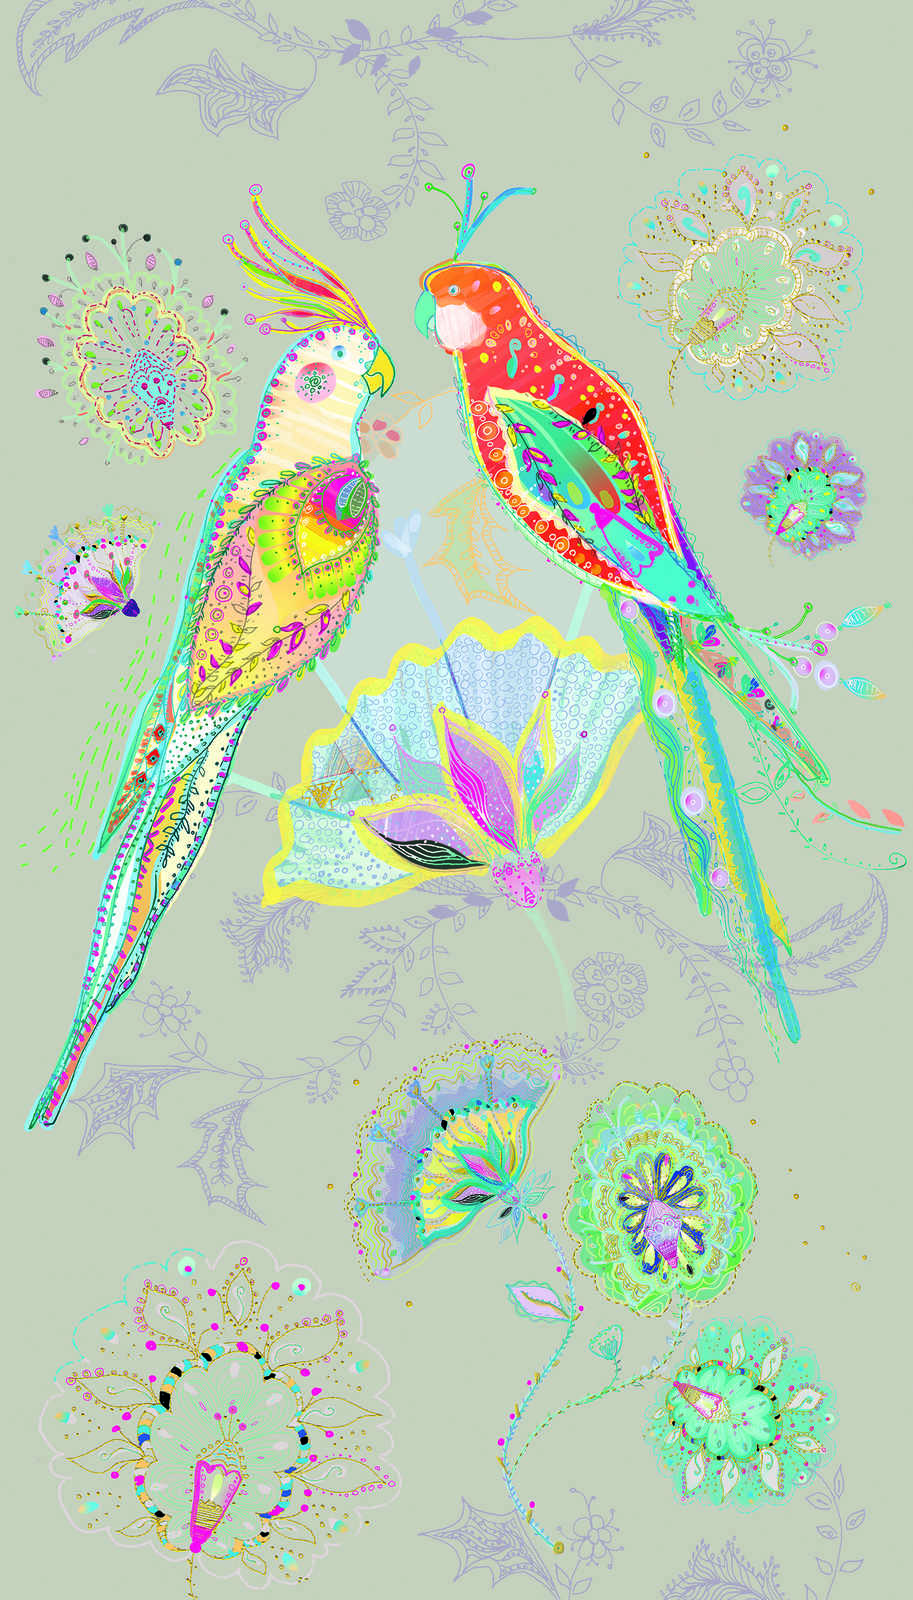             Vliestapete mit Papagei in floralem Style bunt – beige, bunt, grün, blau, orange
        